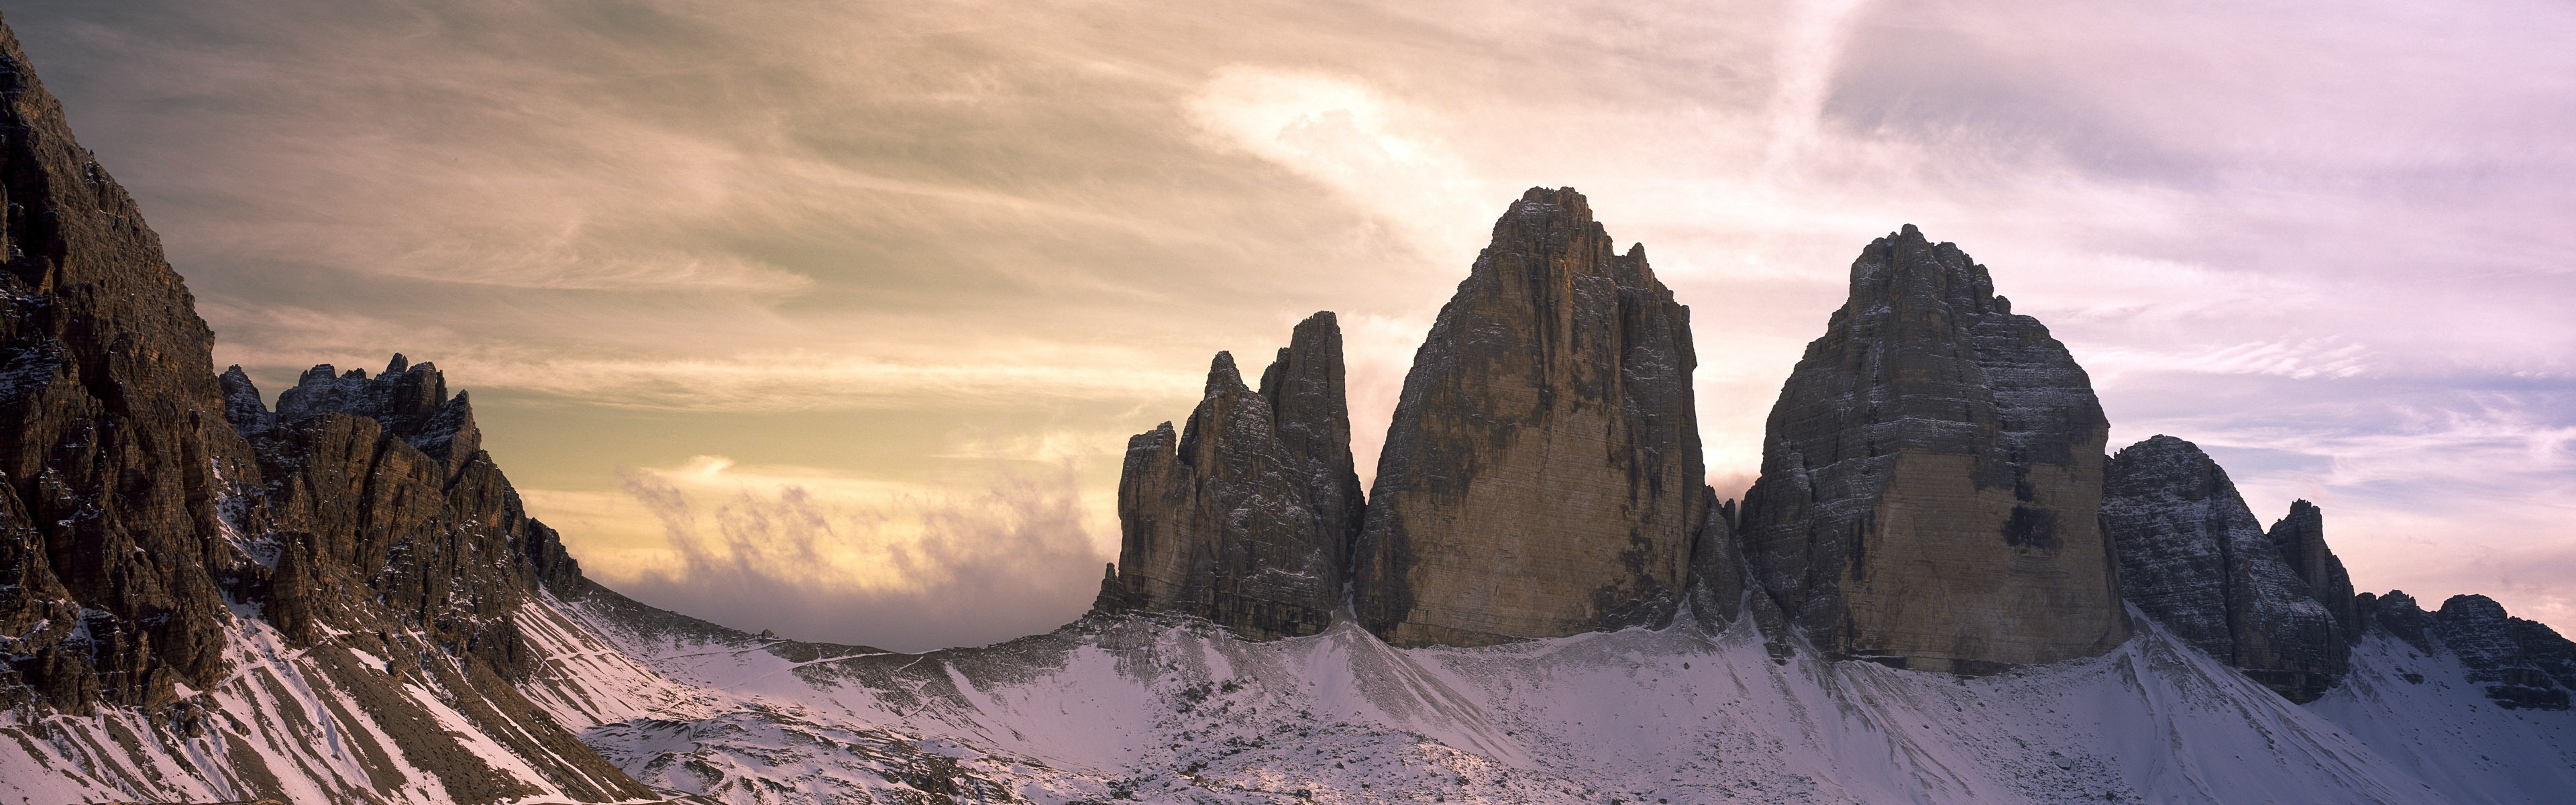 Windows 8 offiziellen Panorama Tapete, Wellen, Wälder, majestätische Berge #13 - 3840x1200